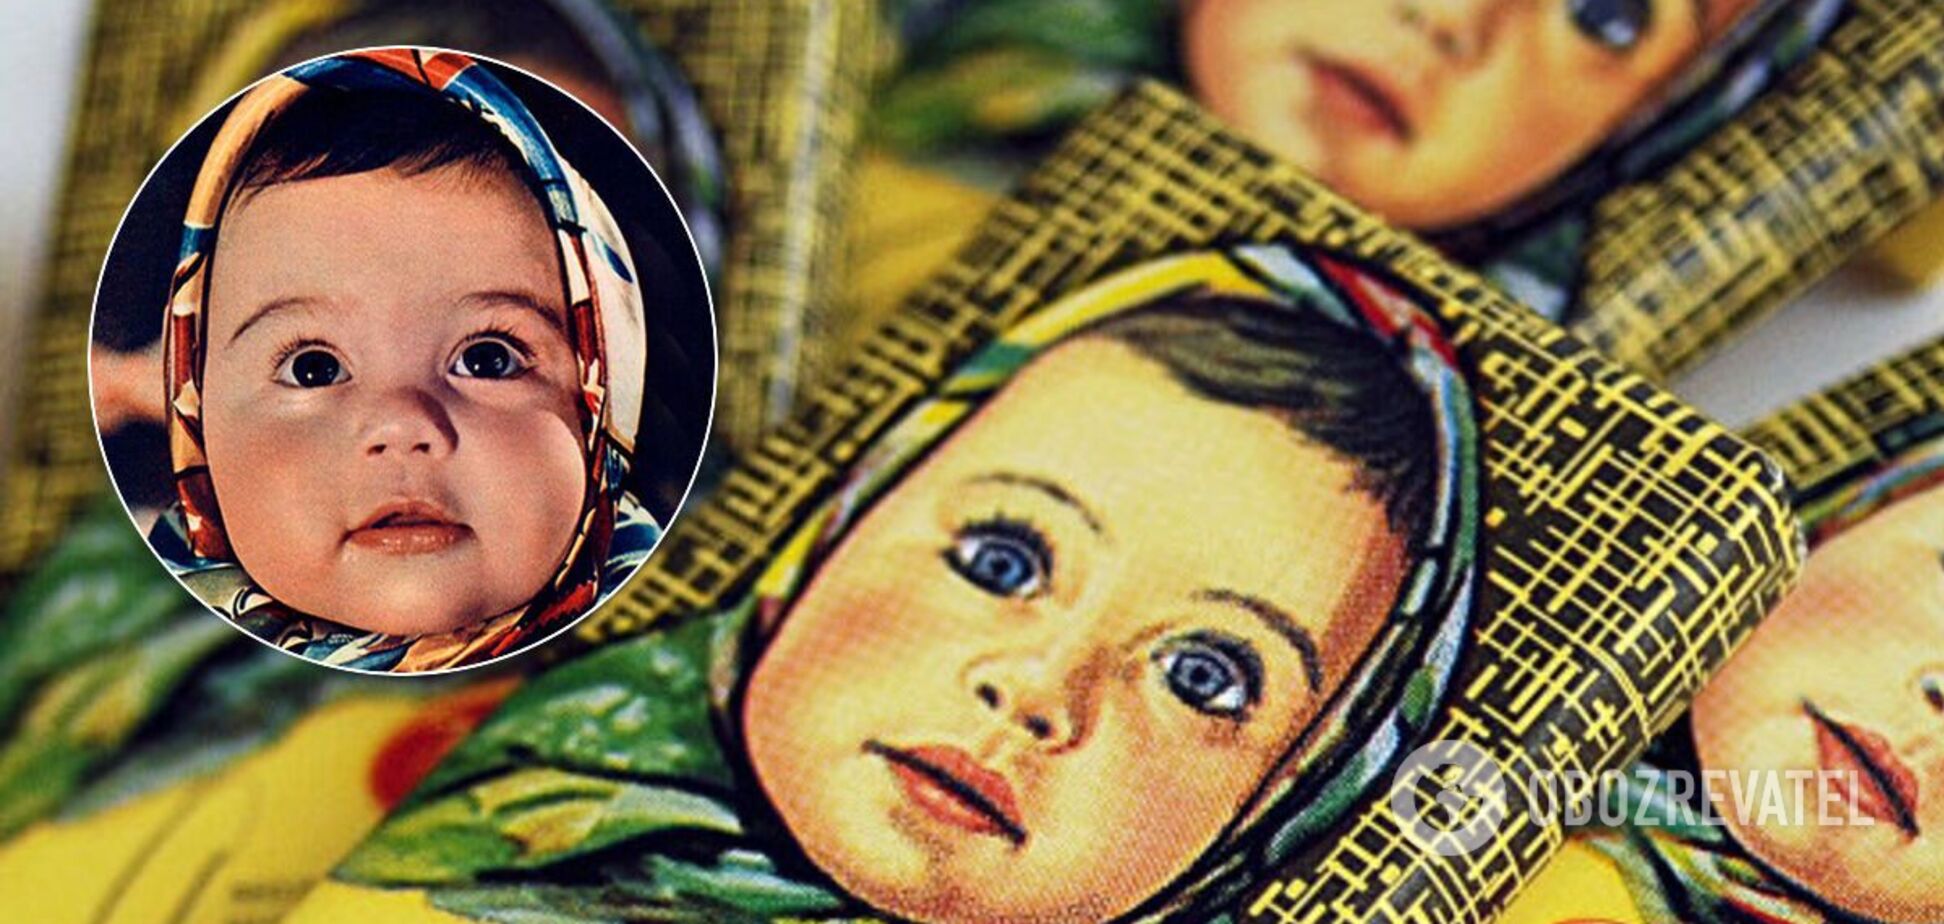 Як з'явилася шоколадка 'Оленка': історія обгортки для улюблених солодощів дітей у СРСР